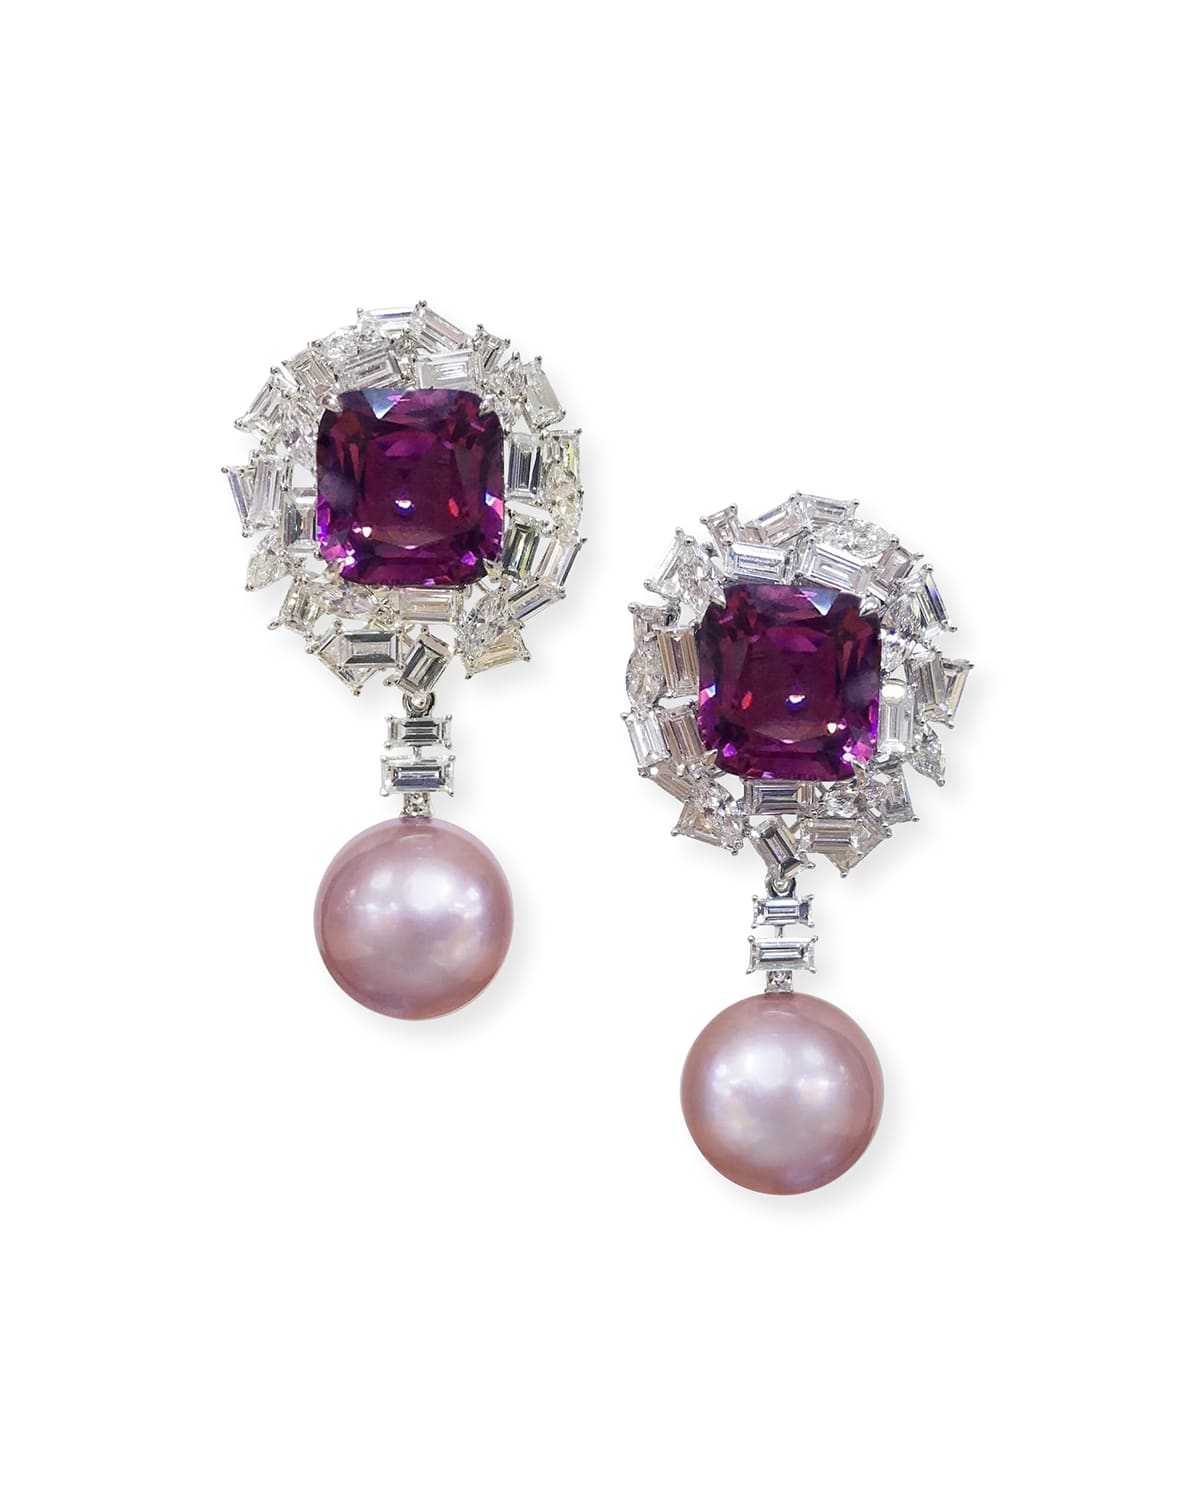 Margot McKinney Jewelry 18k White Gold Pink Pearl, Purple Spinel & Diamond Earrings